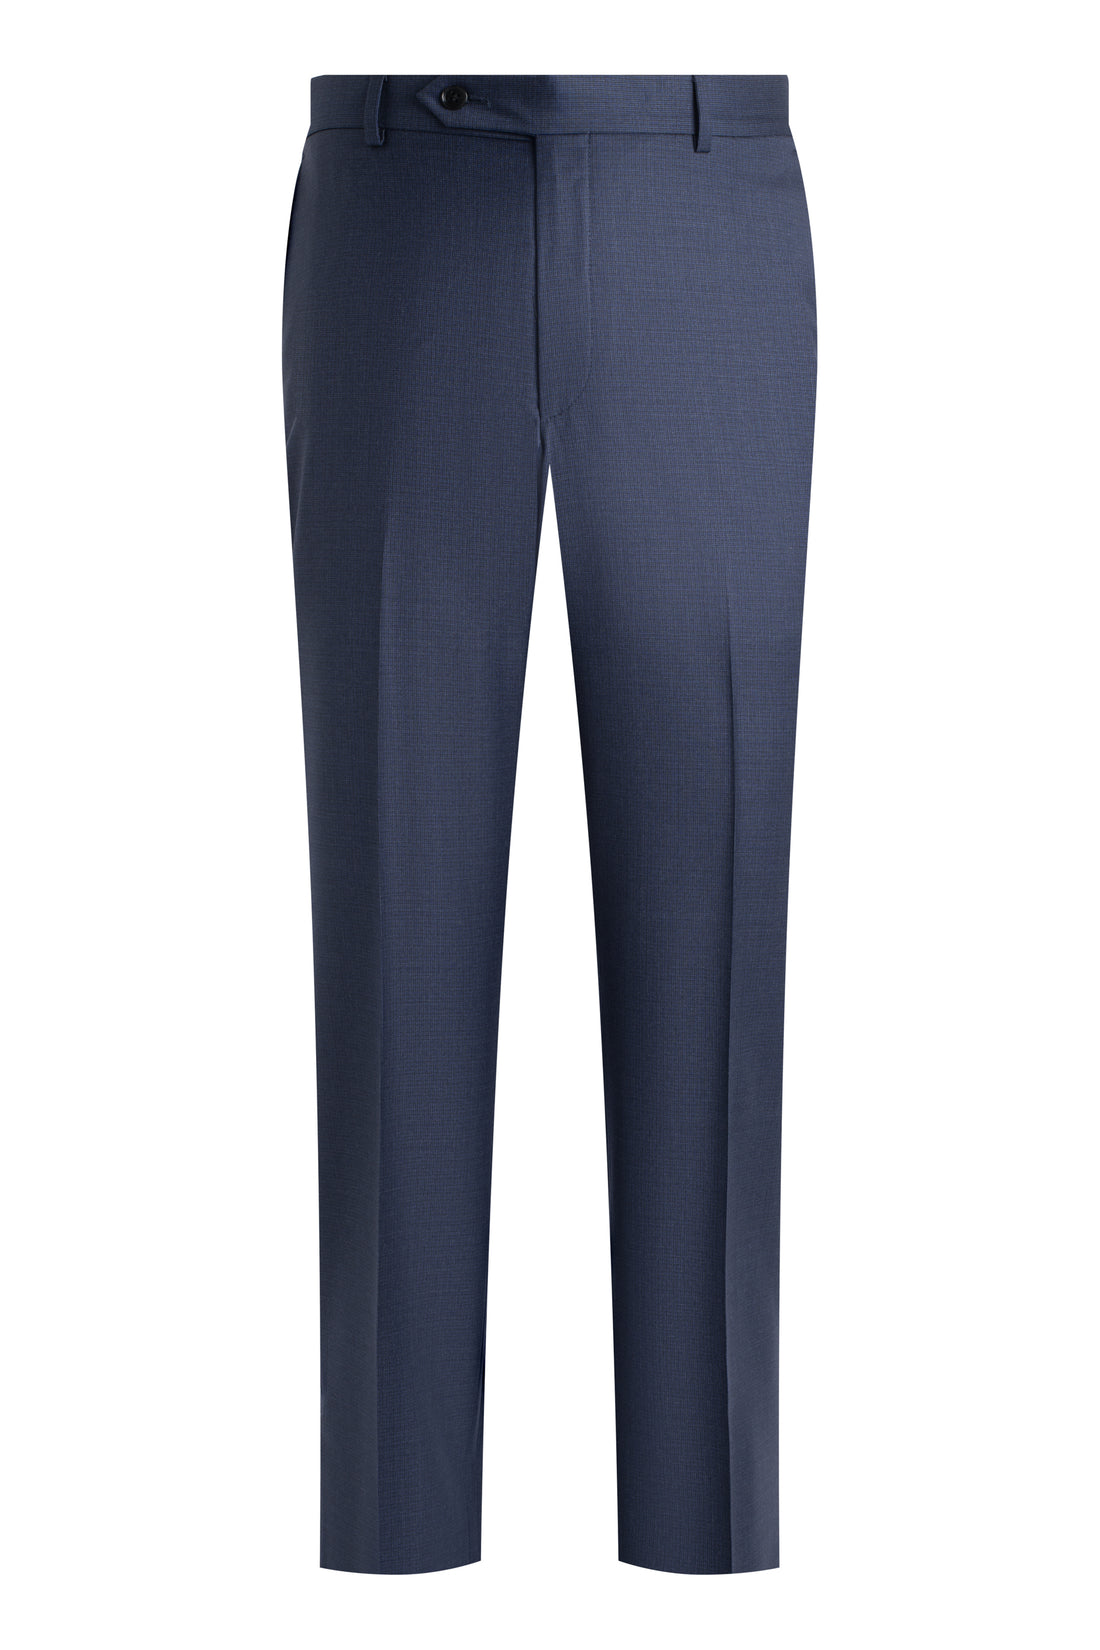 Blue Smart Wool Suit front pant